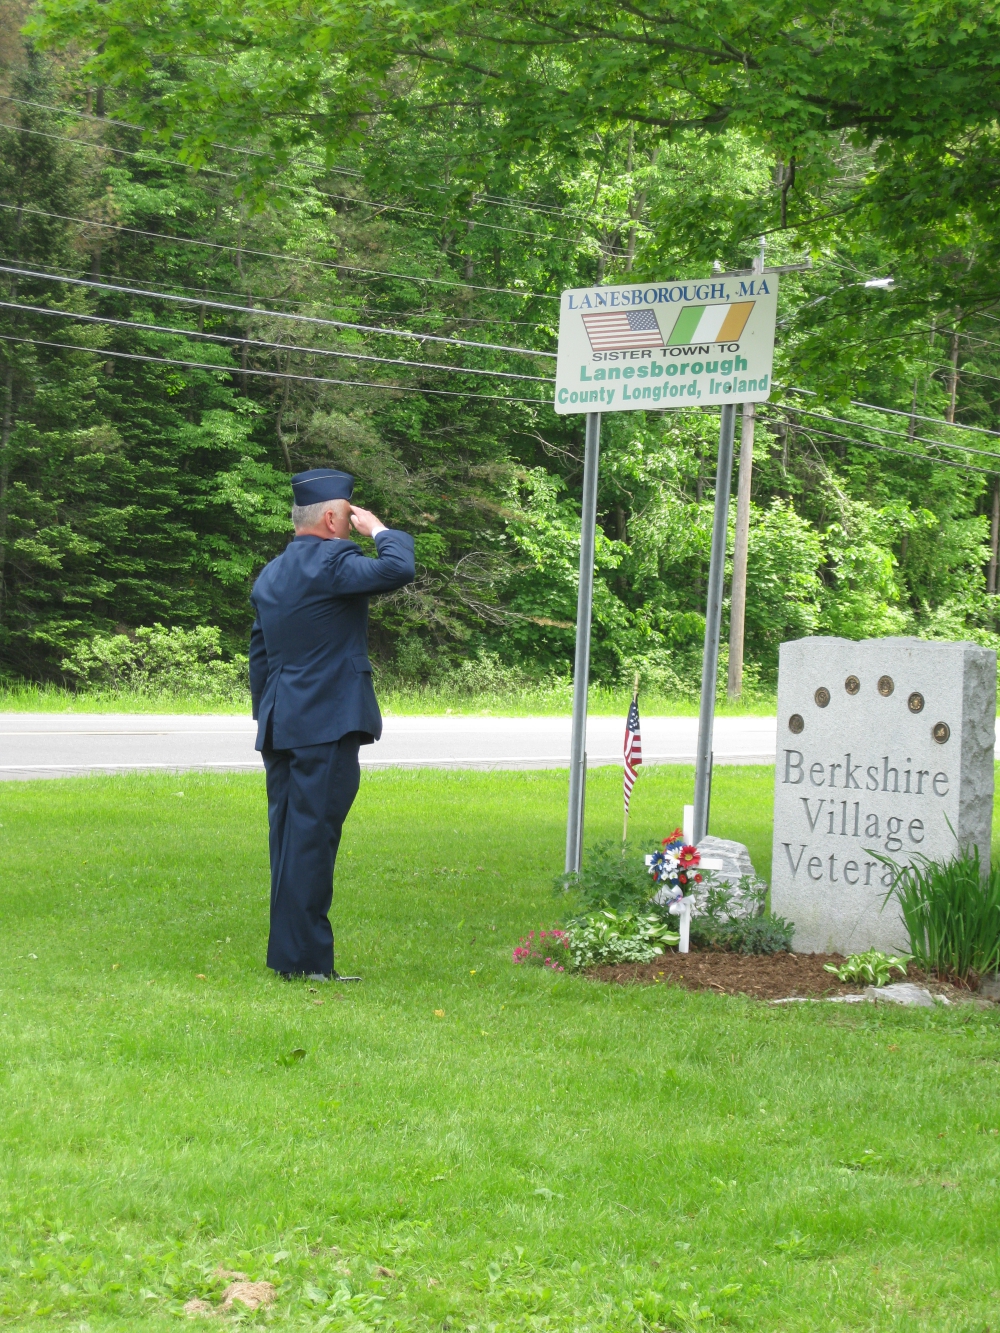 Berkshire Village Veterans